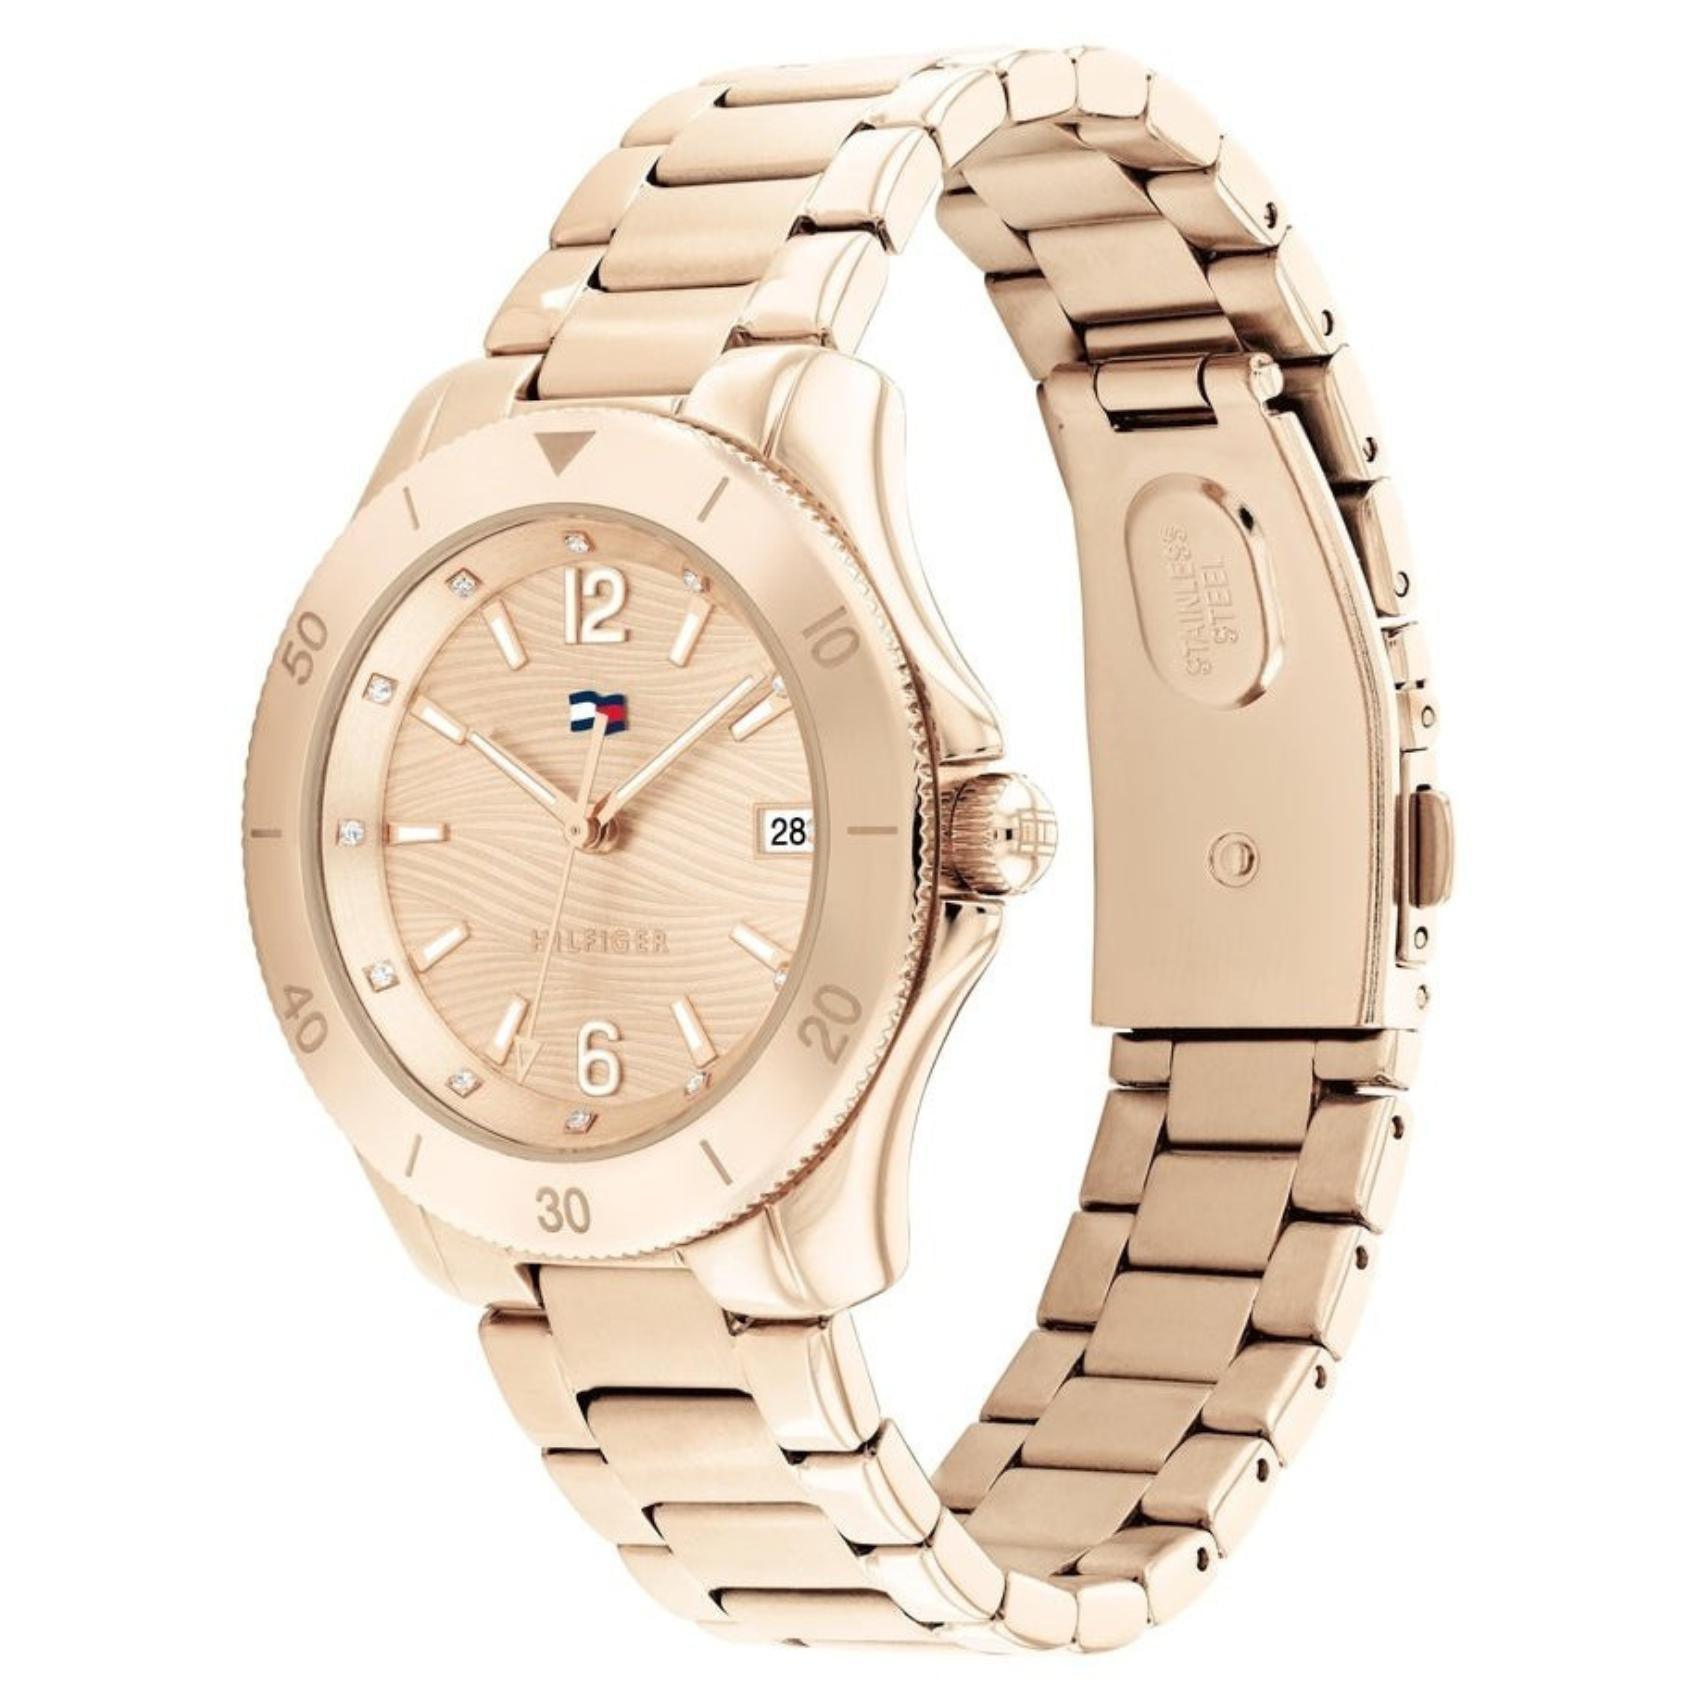 Γυναικείο ρολόι Tommy Hilfiger  Brooke 1782514 με ροζ χρυσό ατσάλινο μπρασελέ και ροζ χρυσό καντράν διαμέτρου 36mm με ημερομηνία.